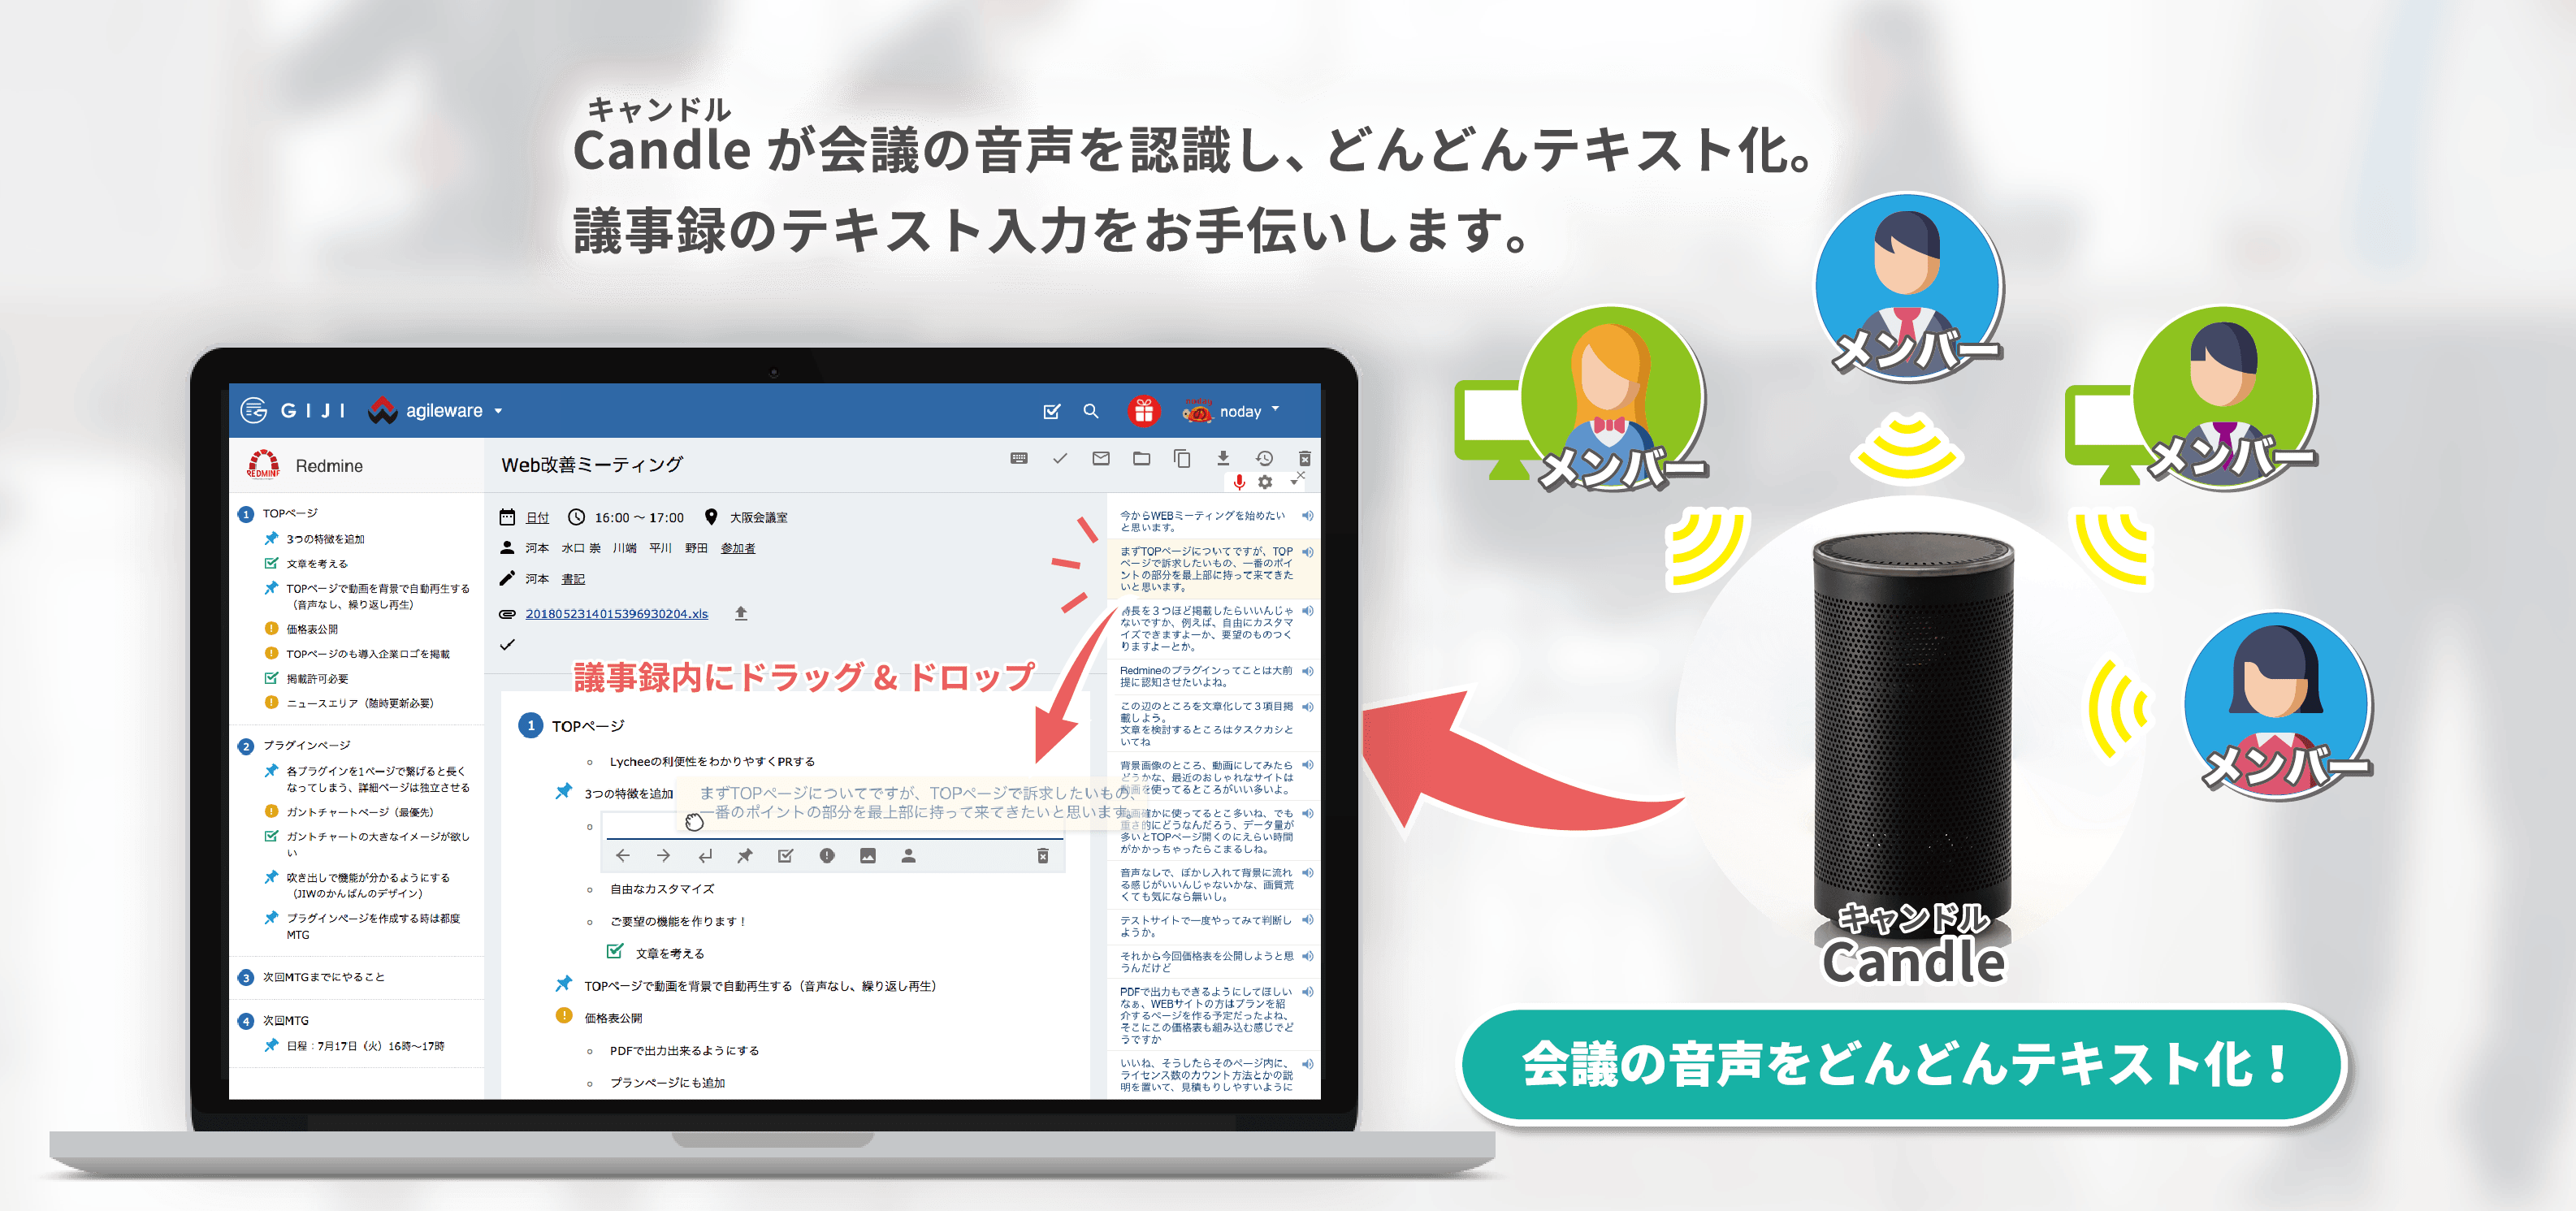 議事録webサービス Giji 音声認識開始 株式会社アジャイルウェアのプレスリリース